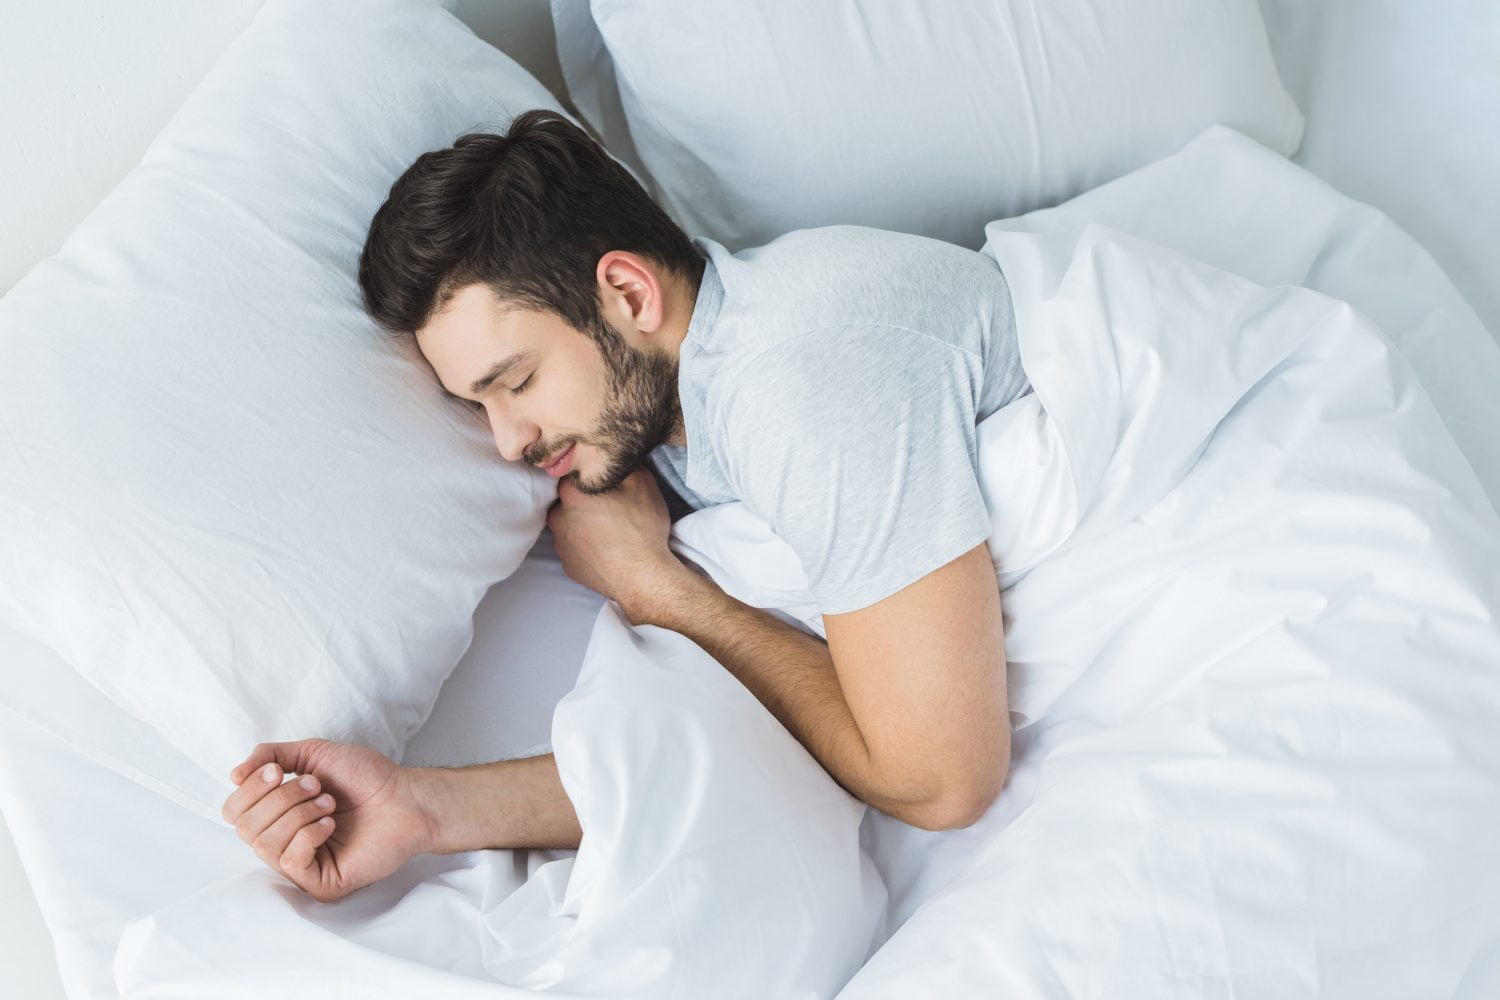 vista superior de un hombre barbudo durmiendo en la cama / dormir / vitamina / conciliar el sueño